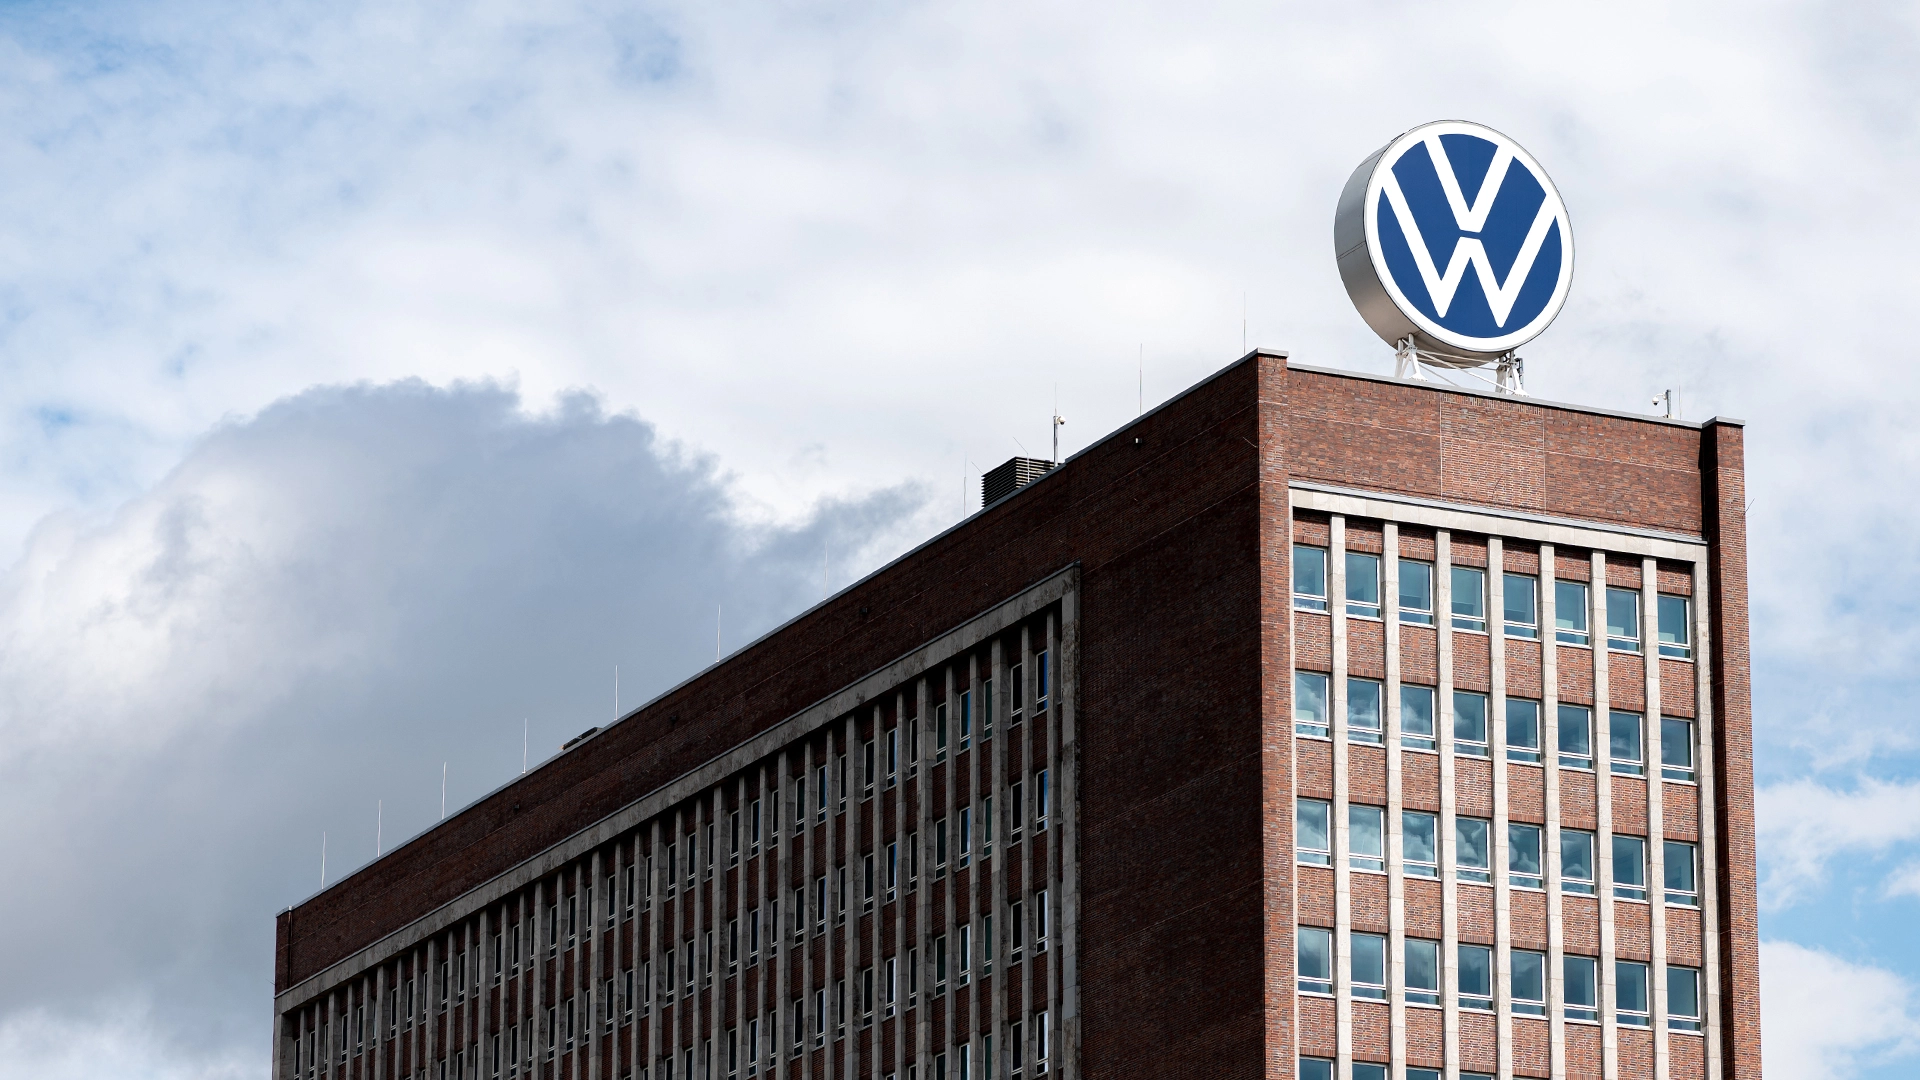 Aktie von Volkswagen bricht ein: Für Anleger ist das aber aus mehreren Gründen eine tolle Nachricht (Foto: Marcel Paschertz/Shutterstock)